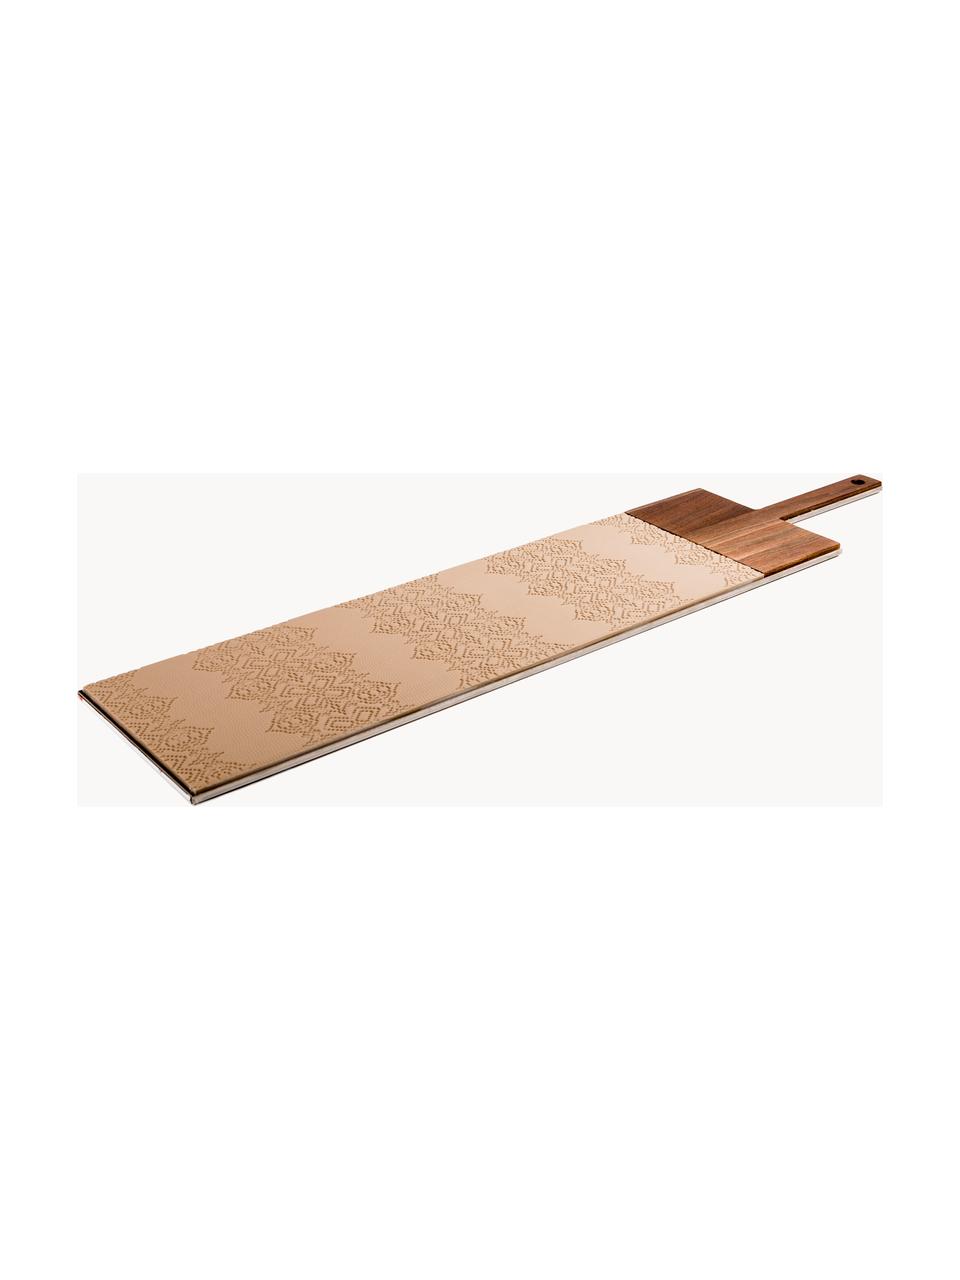 Tabla de cortar de madera de nogal Taglio, Porcelana, madera de nogal, Beige claro, madera oscura, An 79 x F 18 cm